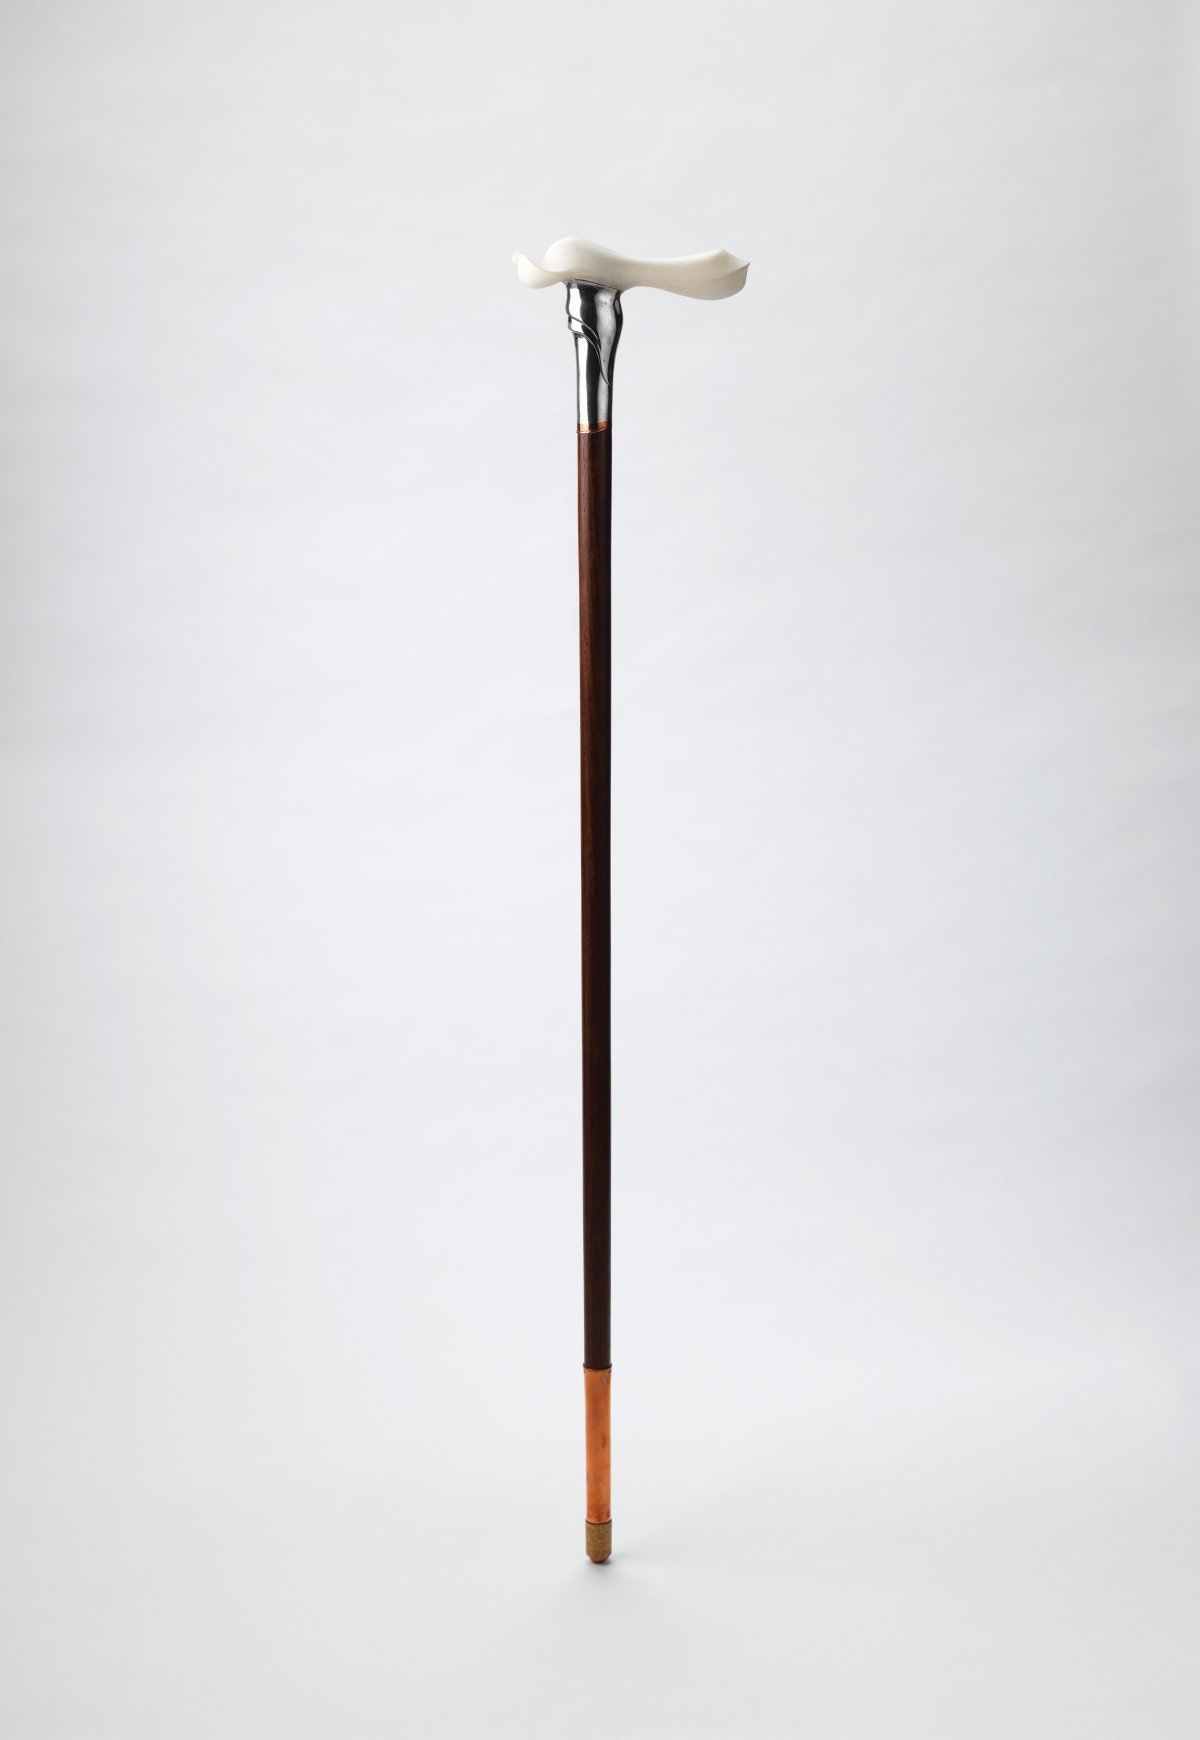 유리지, 지팡이, 1977년, 은 화류목 델린, 유영국미술문화재단 소장. 서울공예박물관 제공